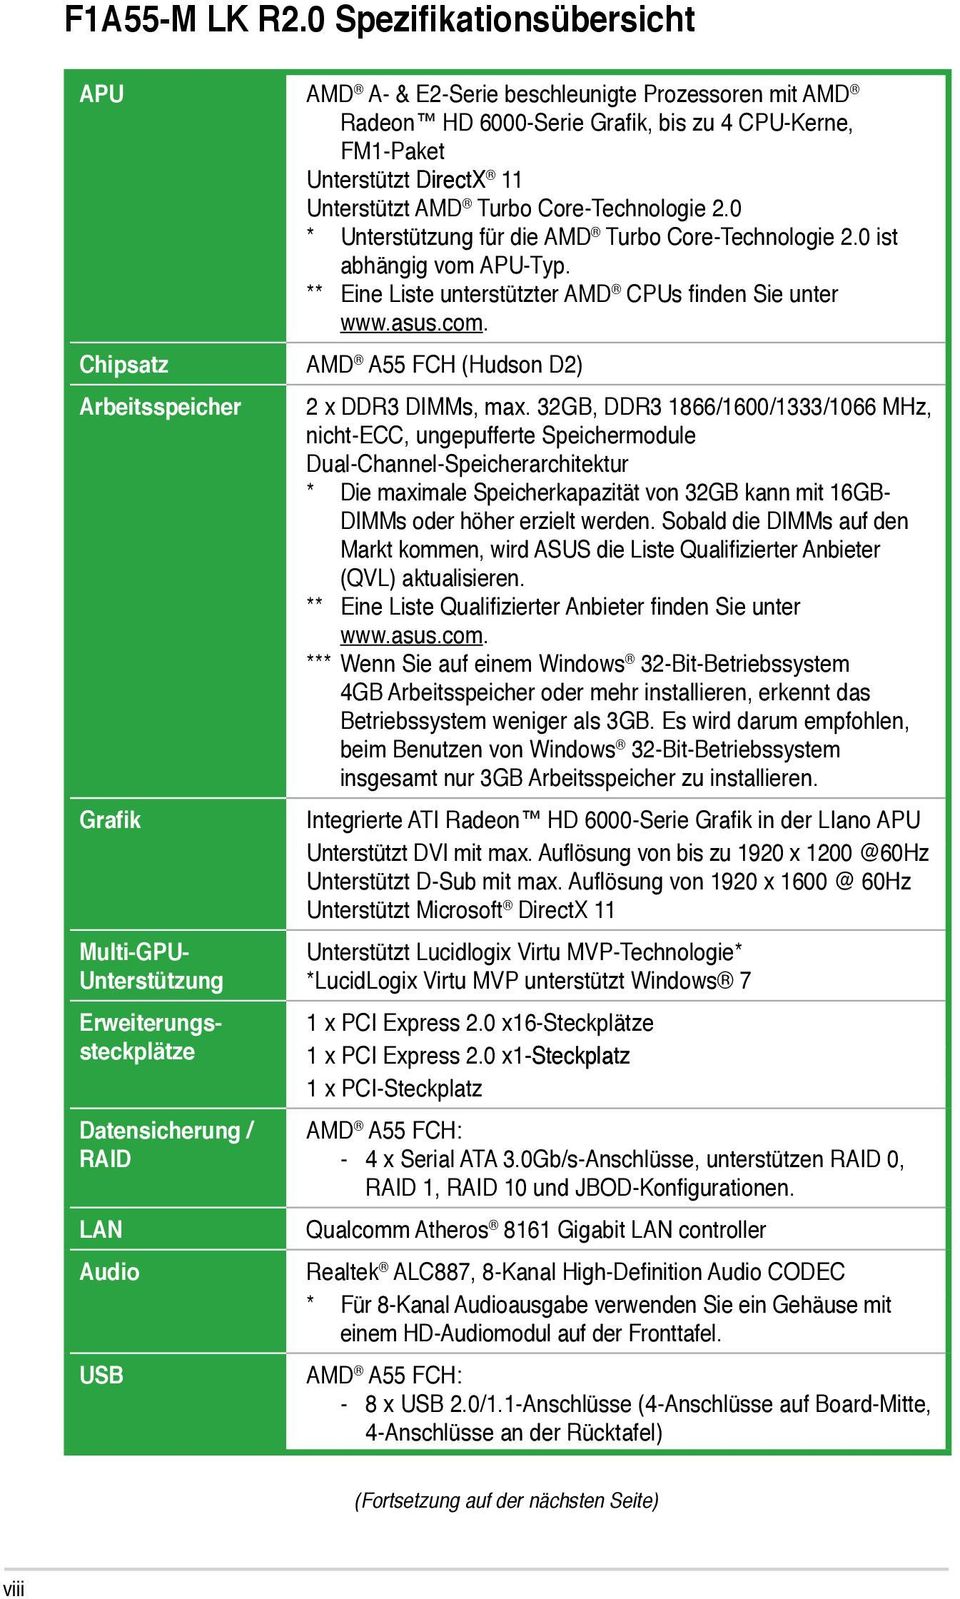 Core-Technologie 2.0 * Unterstützung für die AMD Turbo Core-Technologie 2.0 ist abhängig vom APU-Typ. ** Eine Liste unterstützter AMD CPUs finden Sie unter www.asus.com.